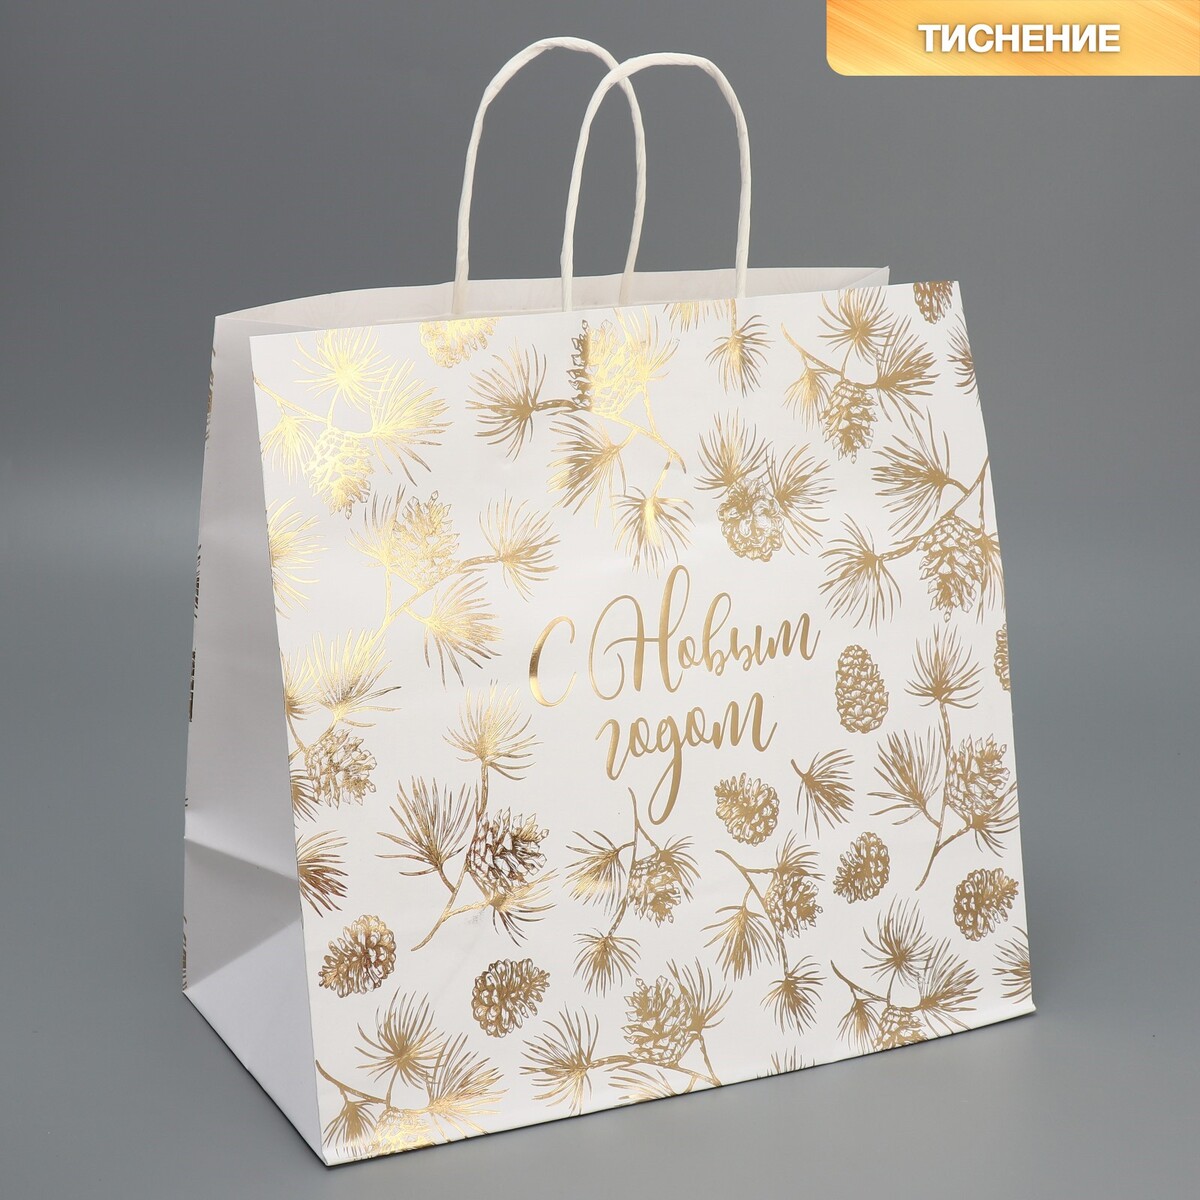 Пакет подарочный крафтовый gold, 32 × 28 × 15 см зажимы для бумаг 32мм meshu rose gold 4шт пакет с европодвесом